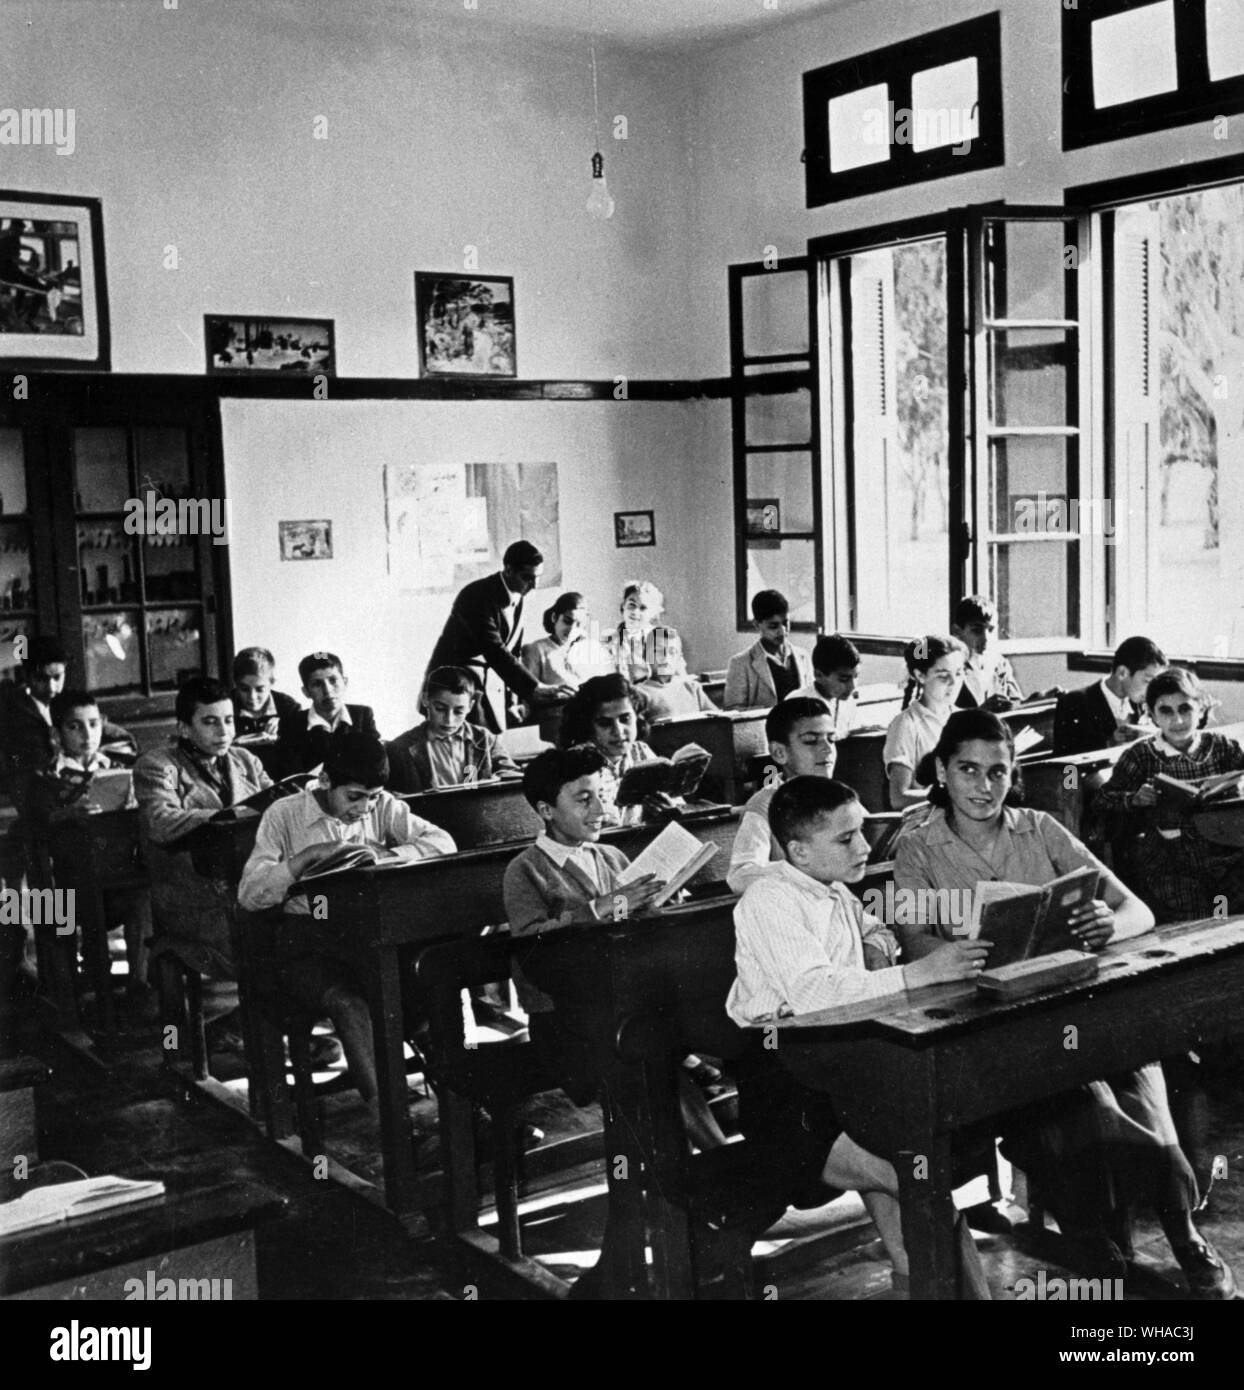 Classe dans une école de garçons. Vente, Maroc fin des années 1950 Banque D'Images